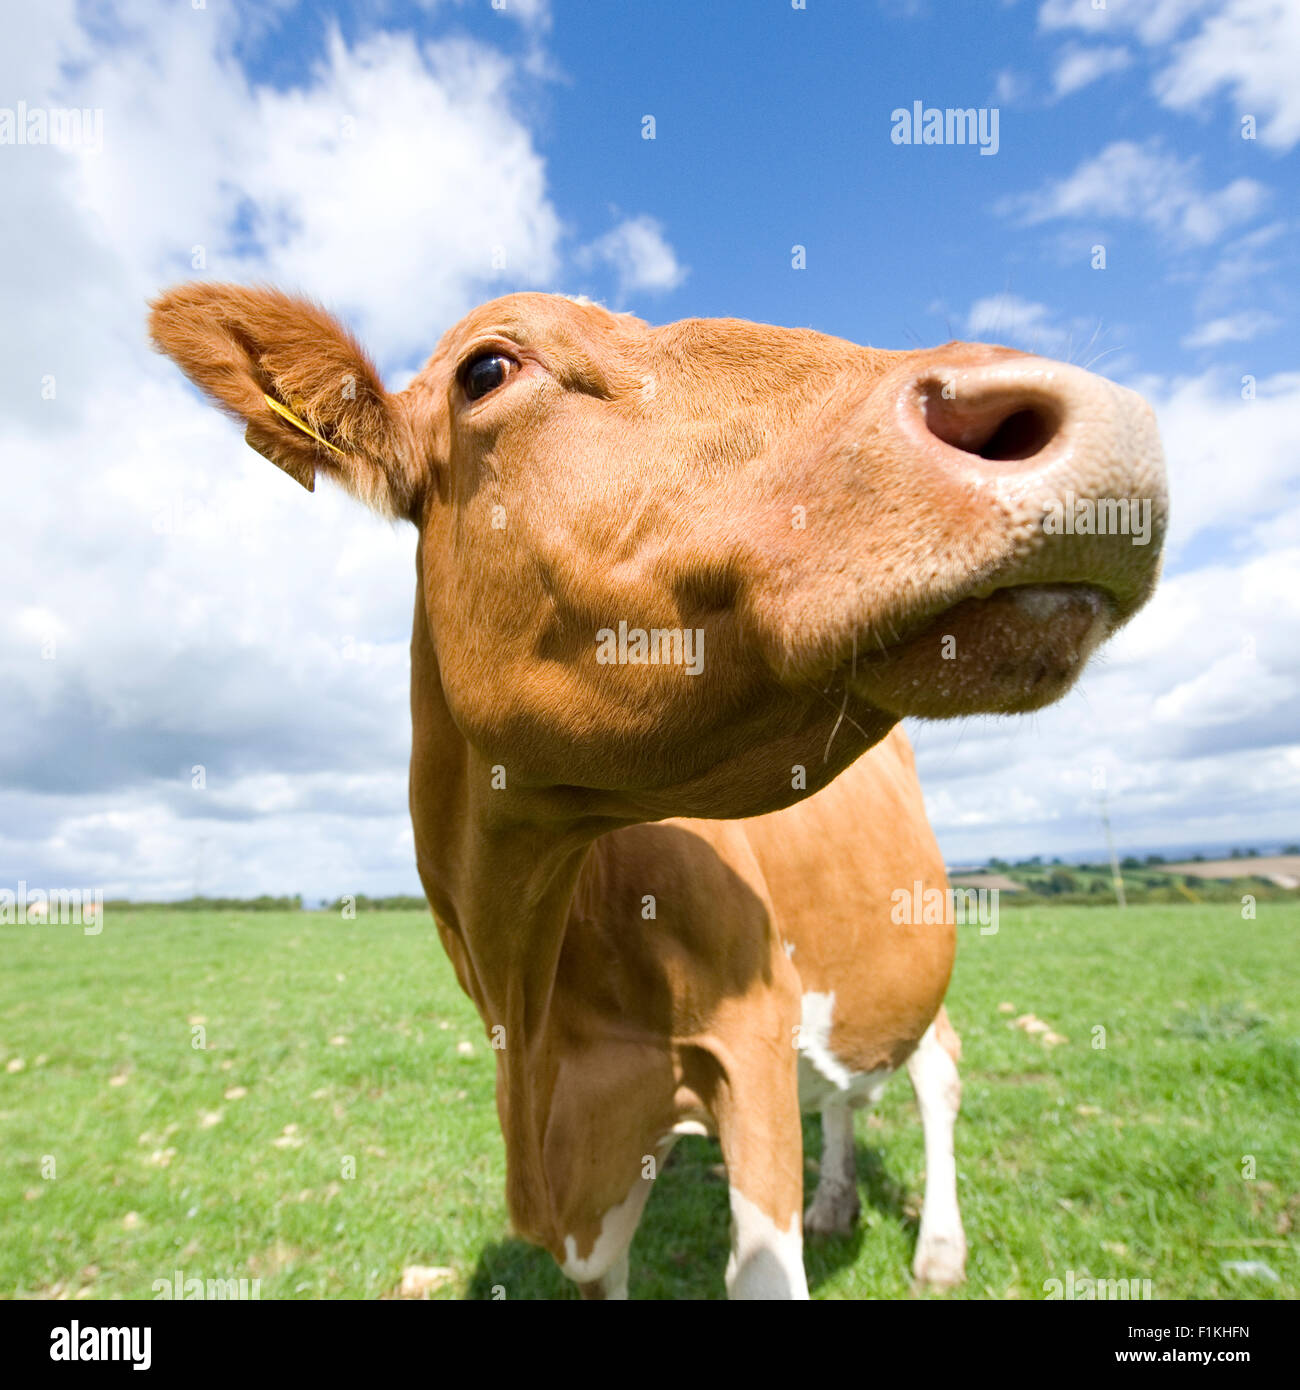 guernsey cow Stock Photo